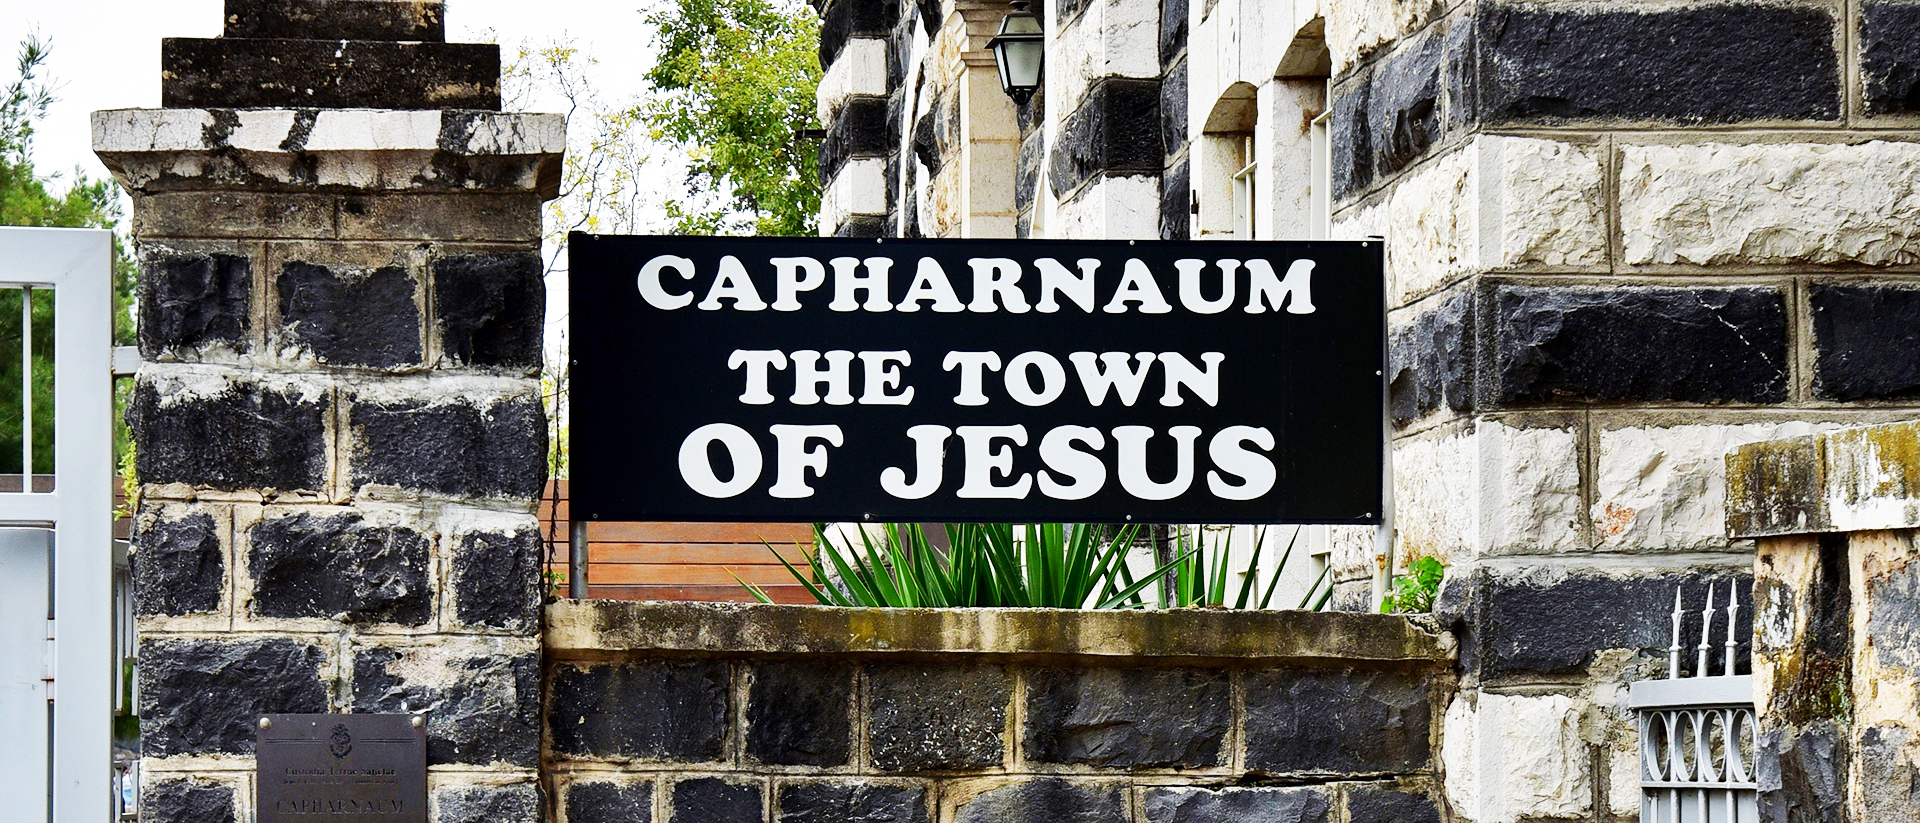 La plaque d'entrée à Capharnaum "Village de Jésus", Israël, 2019 | © Wikimedia commons – Bahnfrend – CC BY-SA 4.0 Deed 